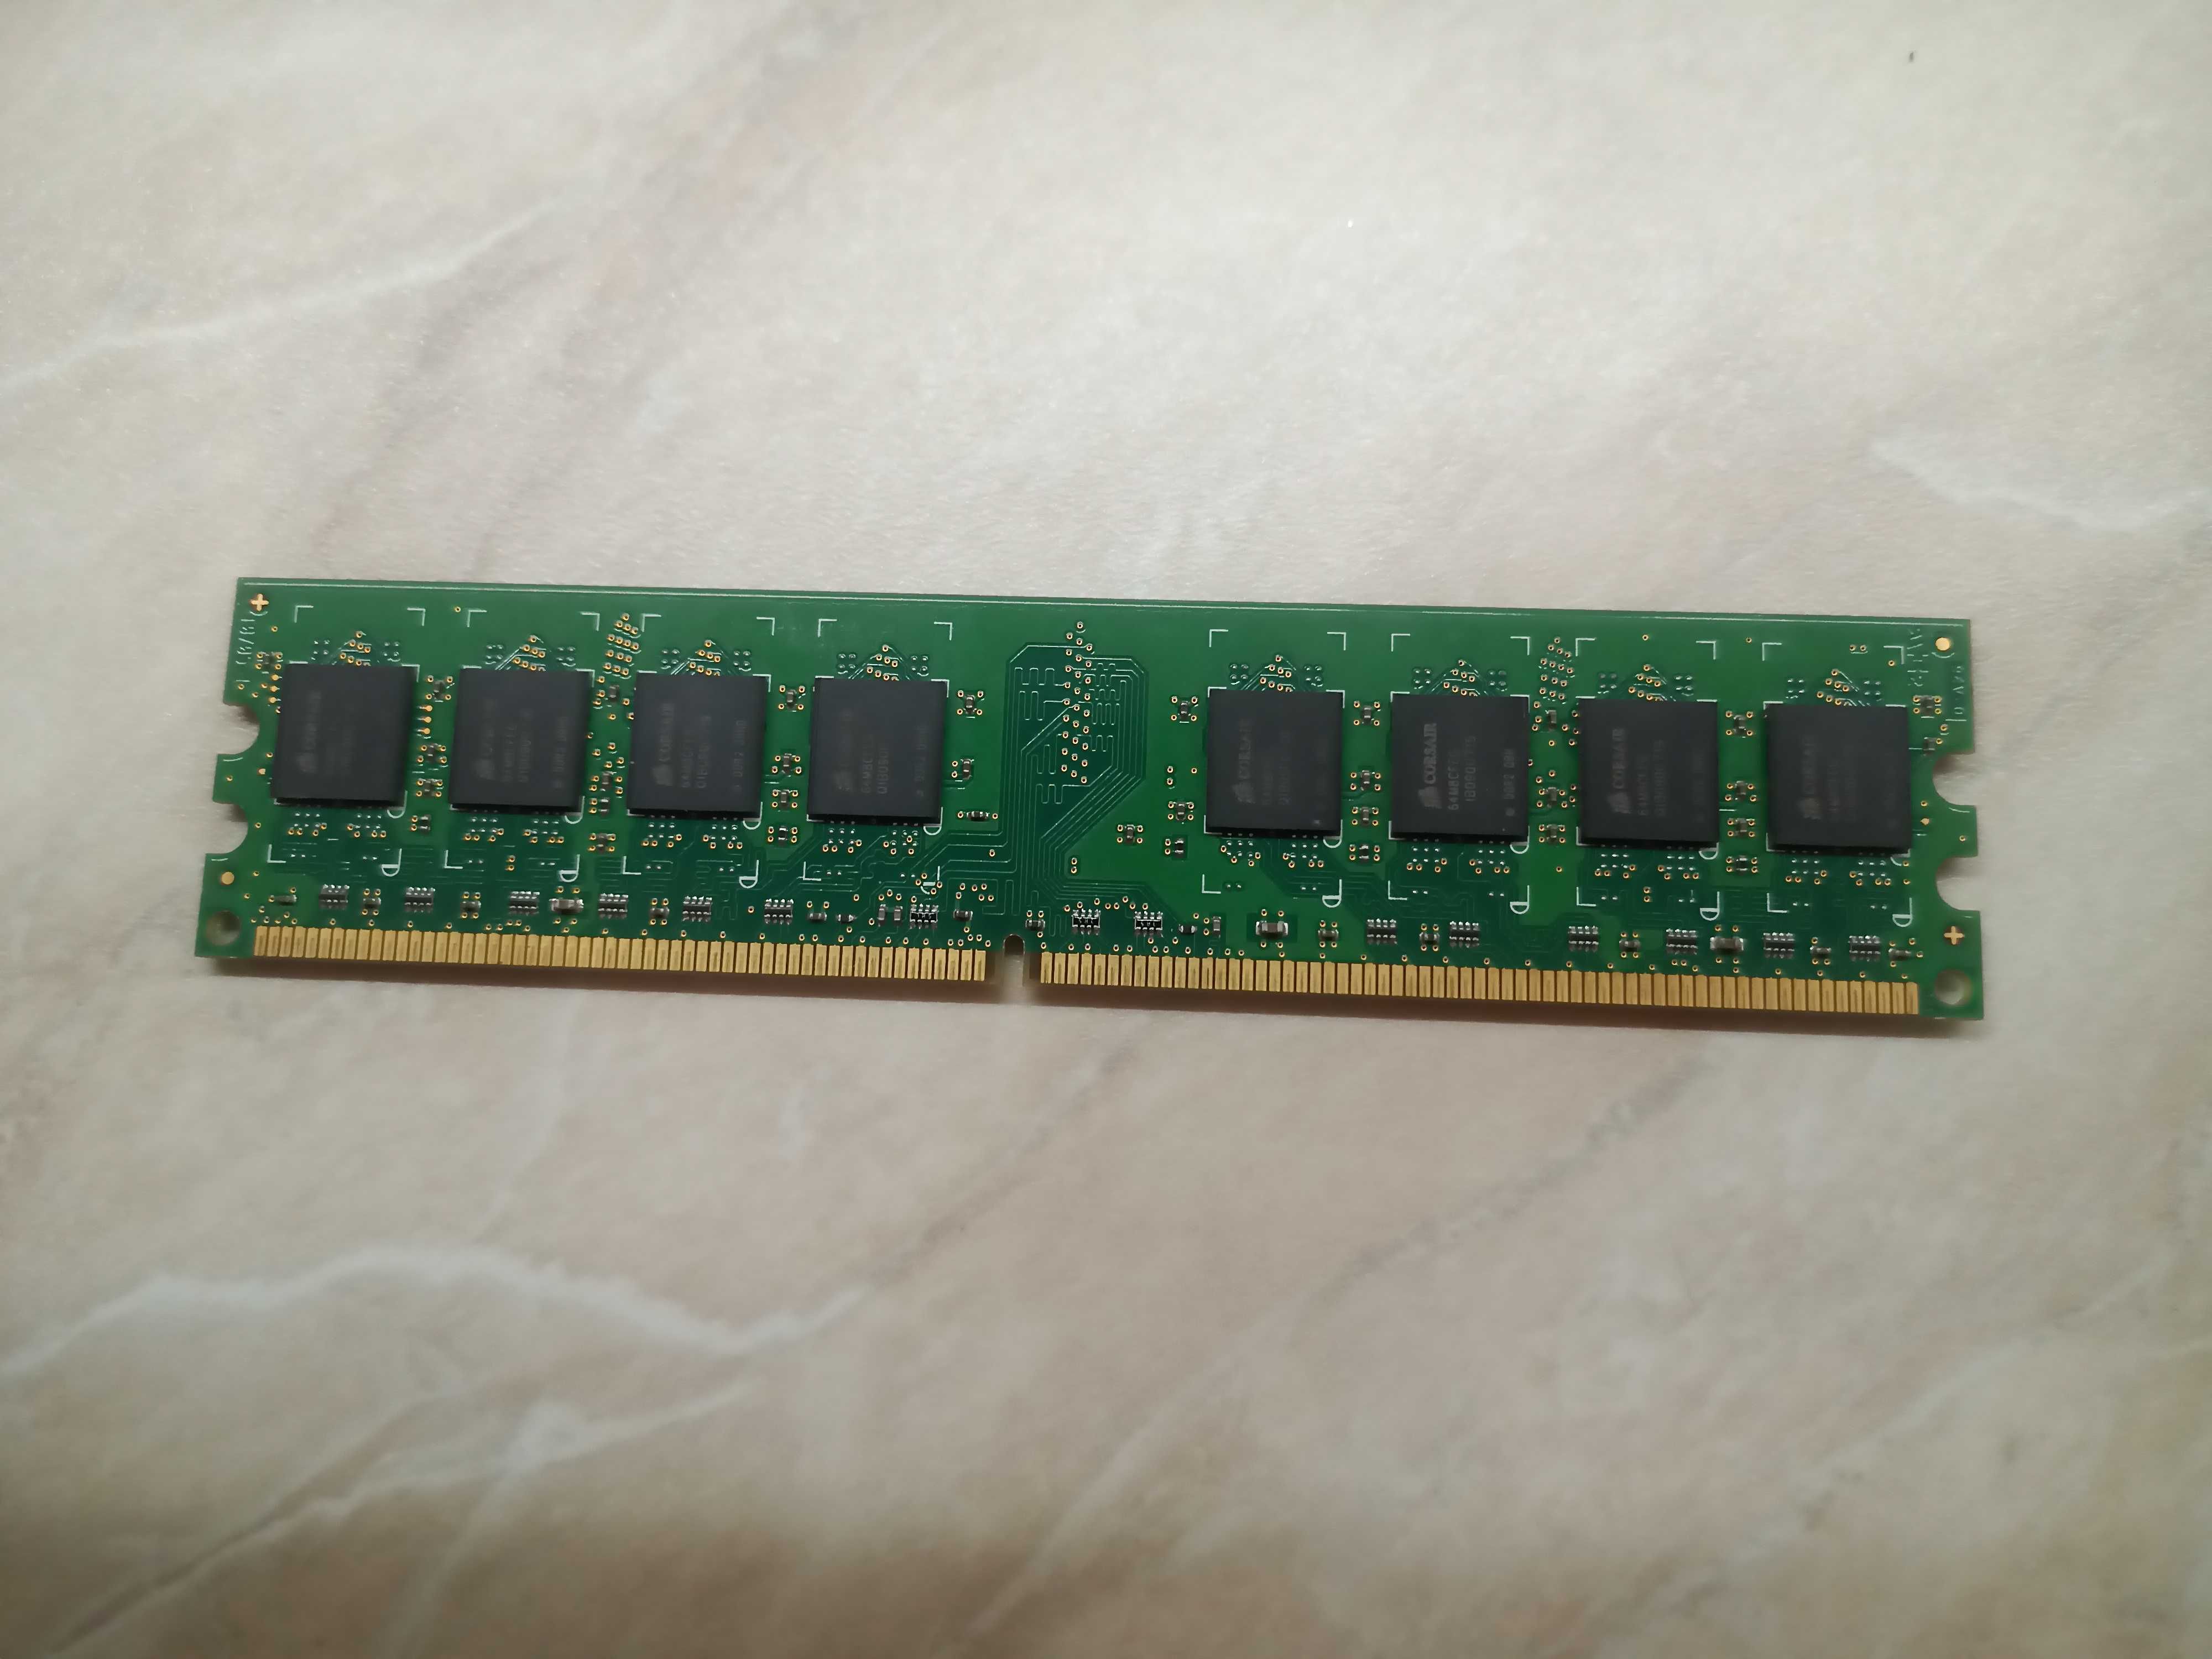 Модуль памяти Corsair DDR2 1GB 667MHz (VS1GB667D2)